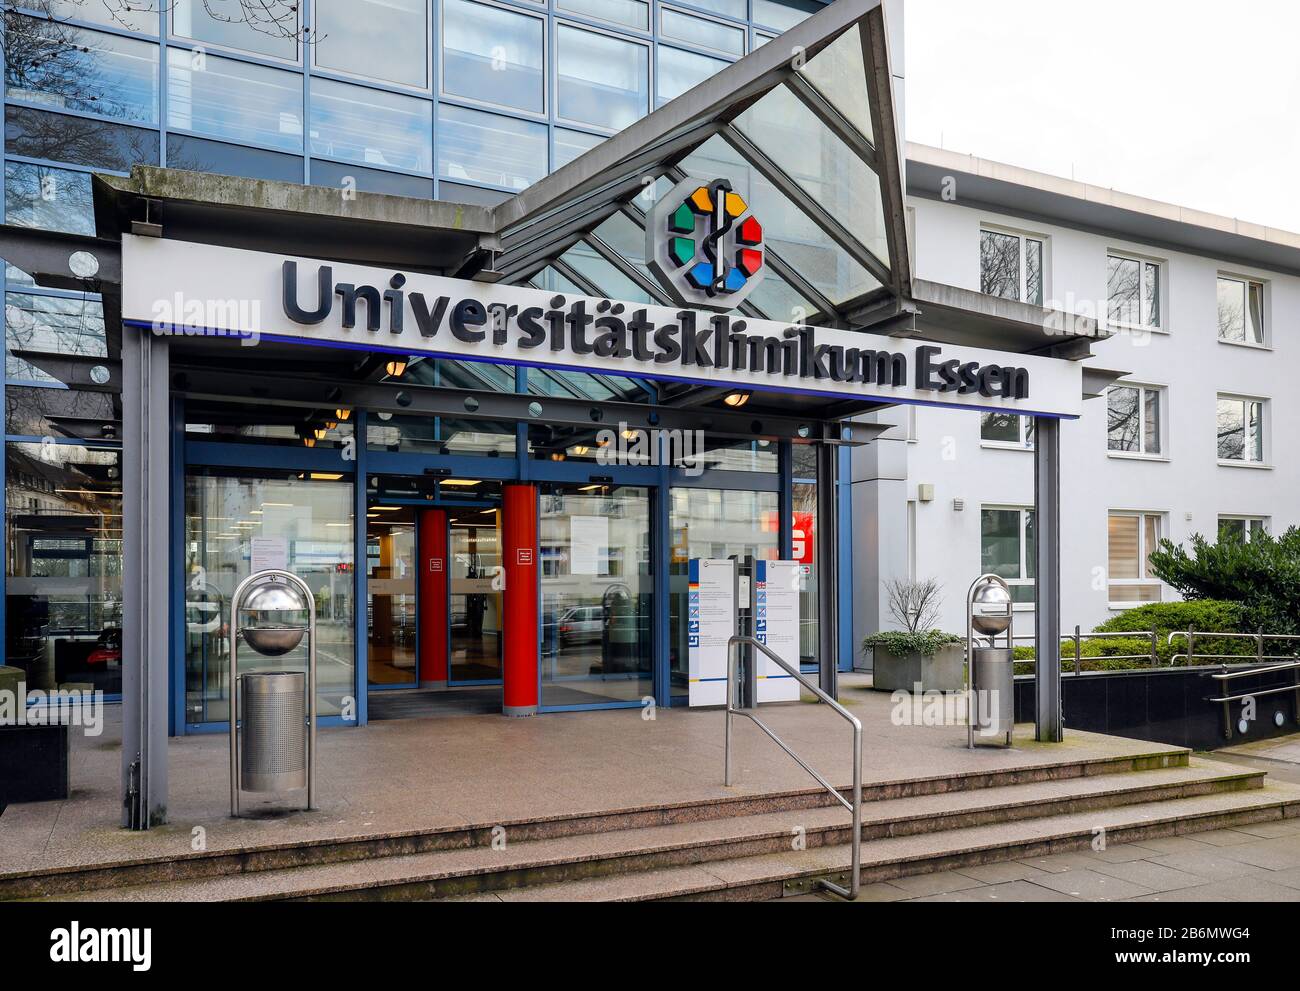 Essen, Ruhr Area, North Rhine-Westphalia, Germany - University Hospital Essen. Essen, Ruhrgebiet, Nordrhein-Westfalen, Deutschland - Universitaetsklin Stock Photo